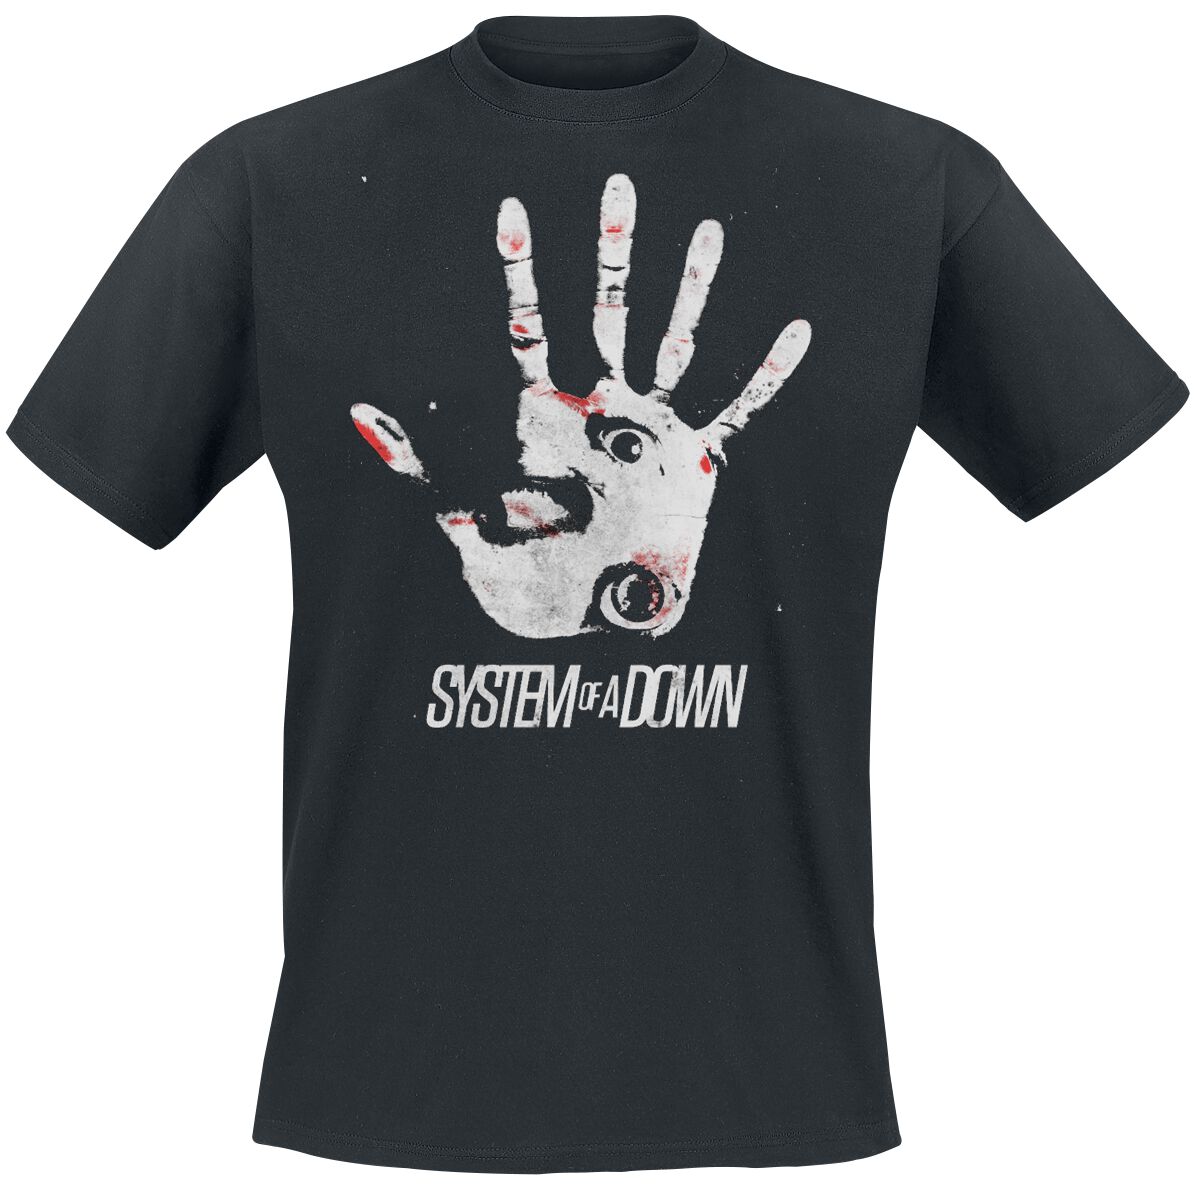 System Of A Down T-Shirt - Hand eye - M bis XXL - für Männer - Größe L - schwarz  - Lizenziertes Merchandise!